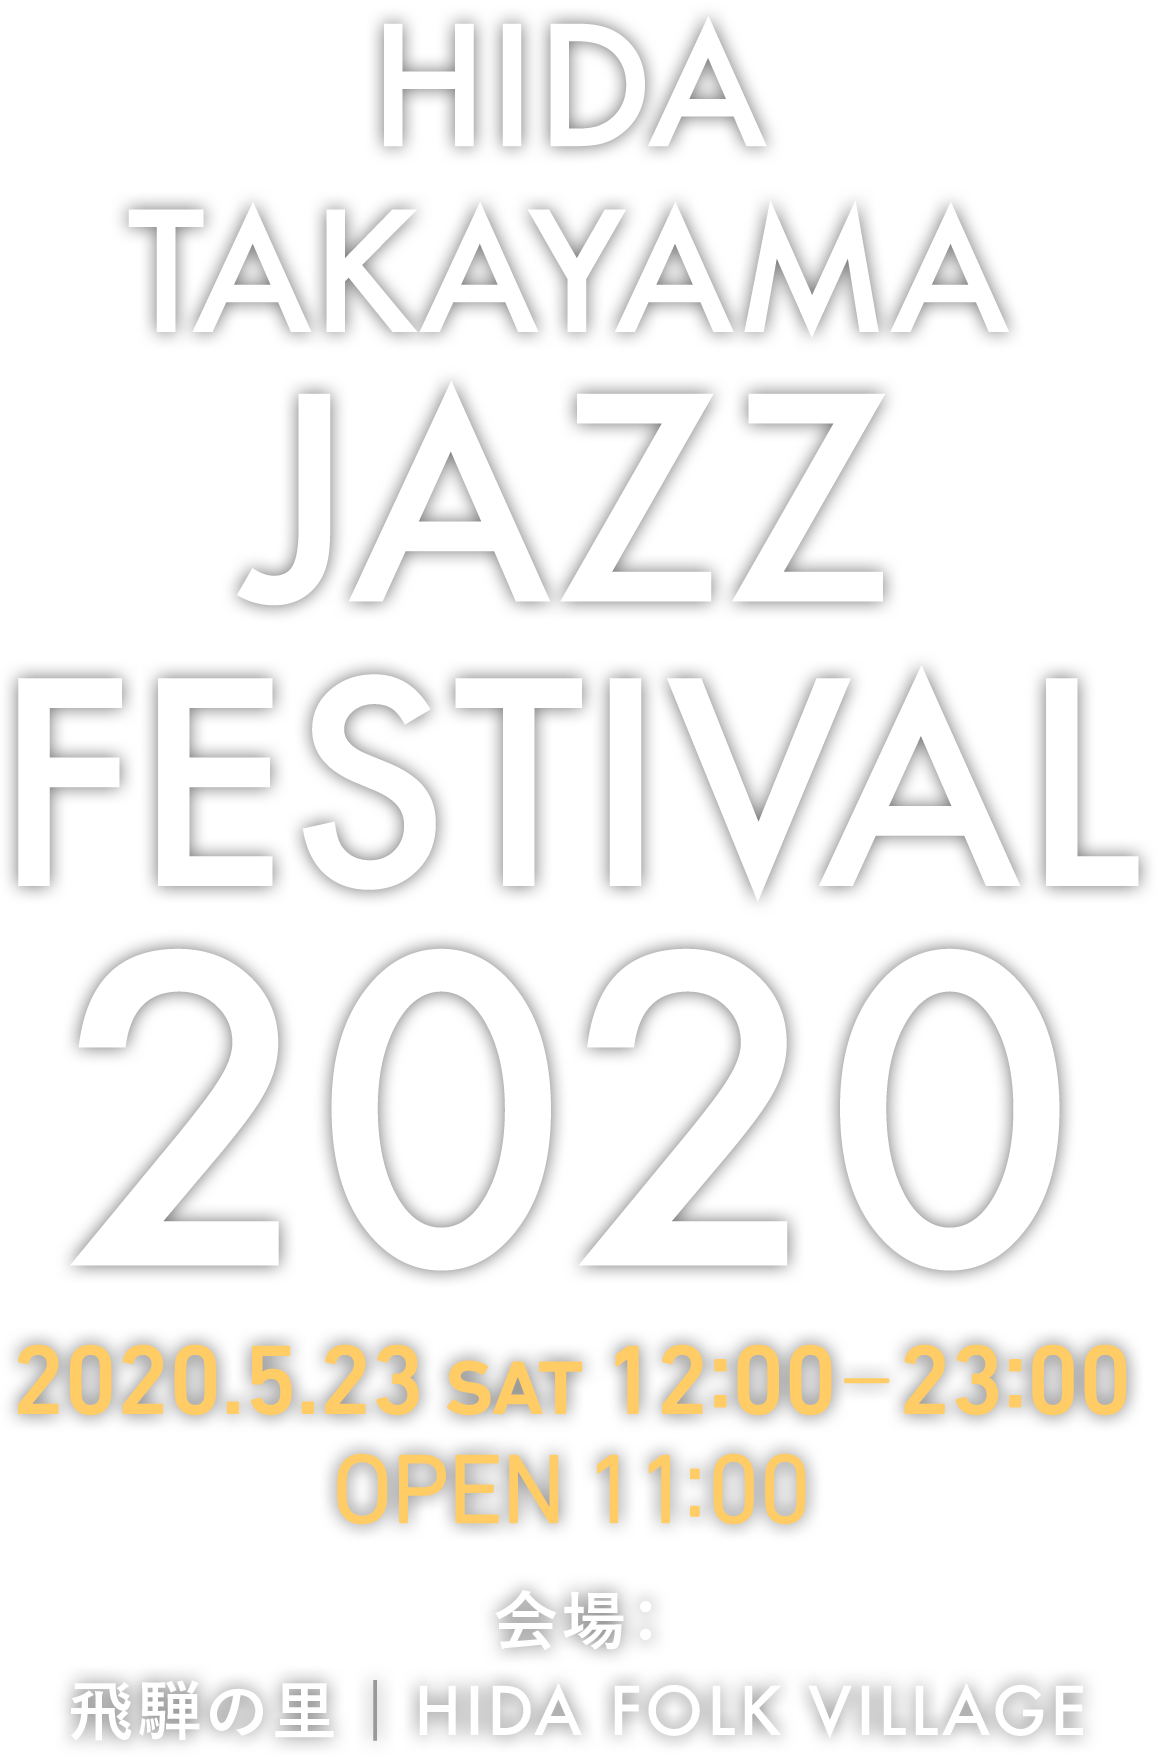 Hida Takayama Jazz Festival 飛騨高山ジャズフェスティバル